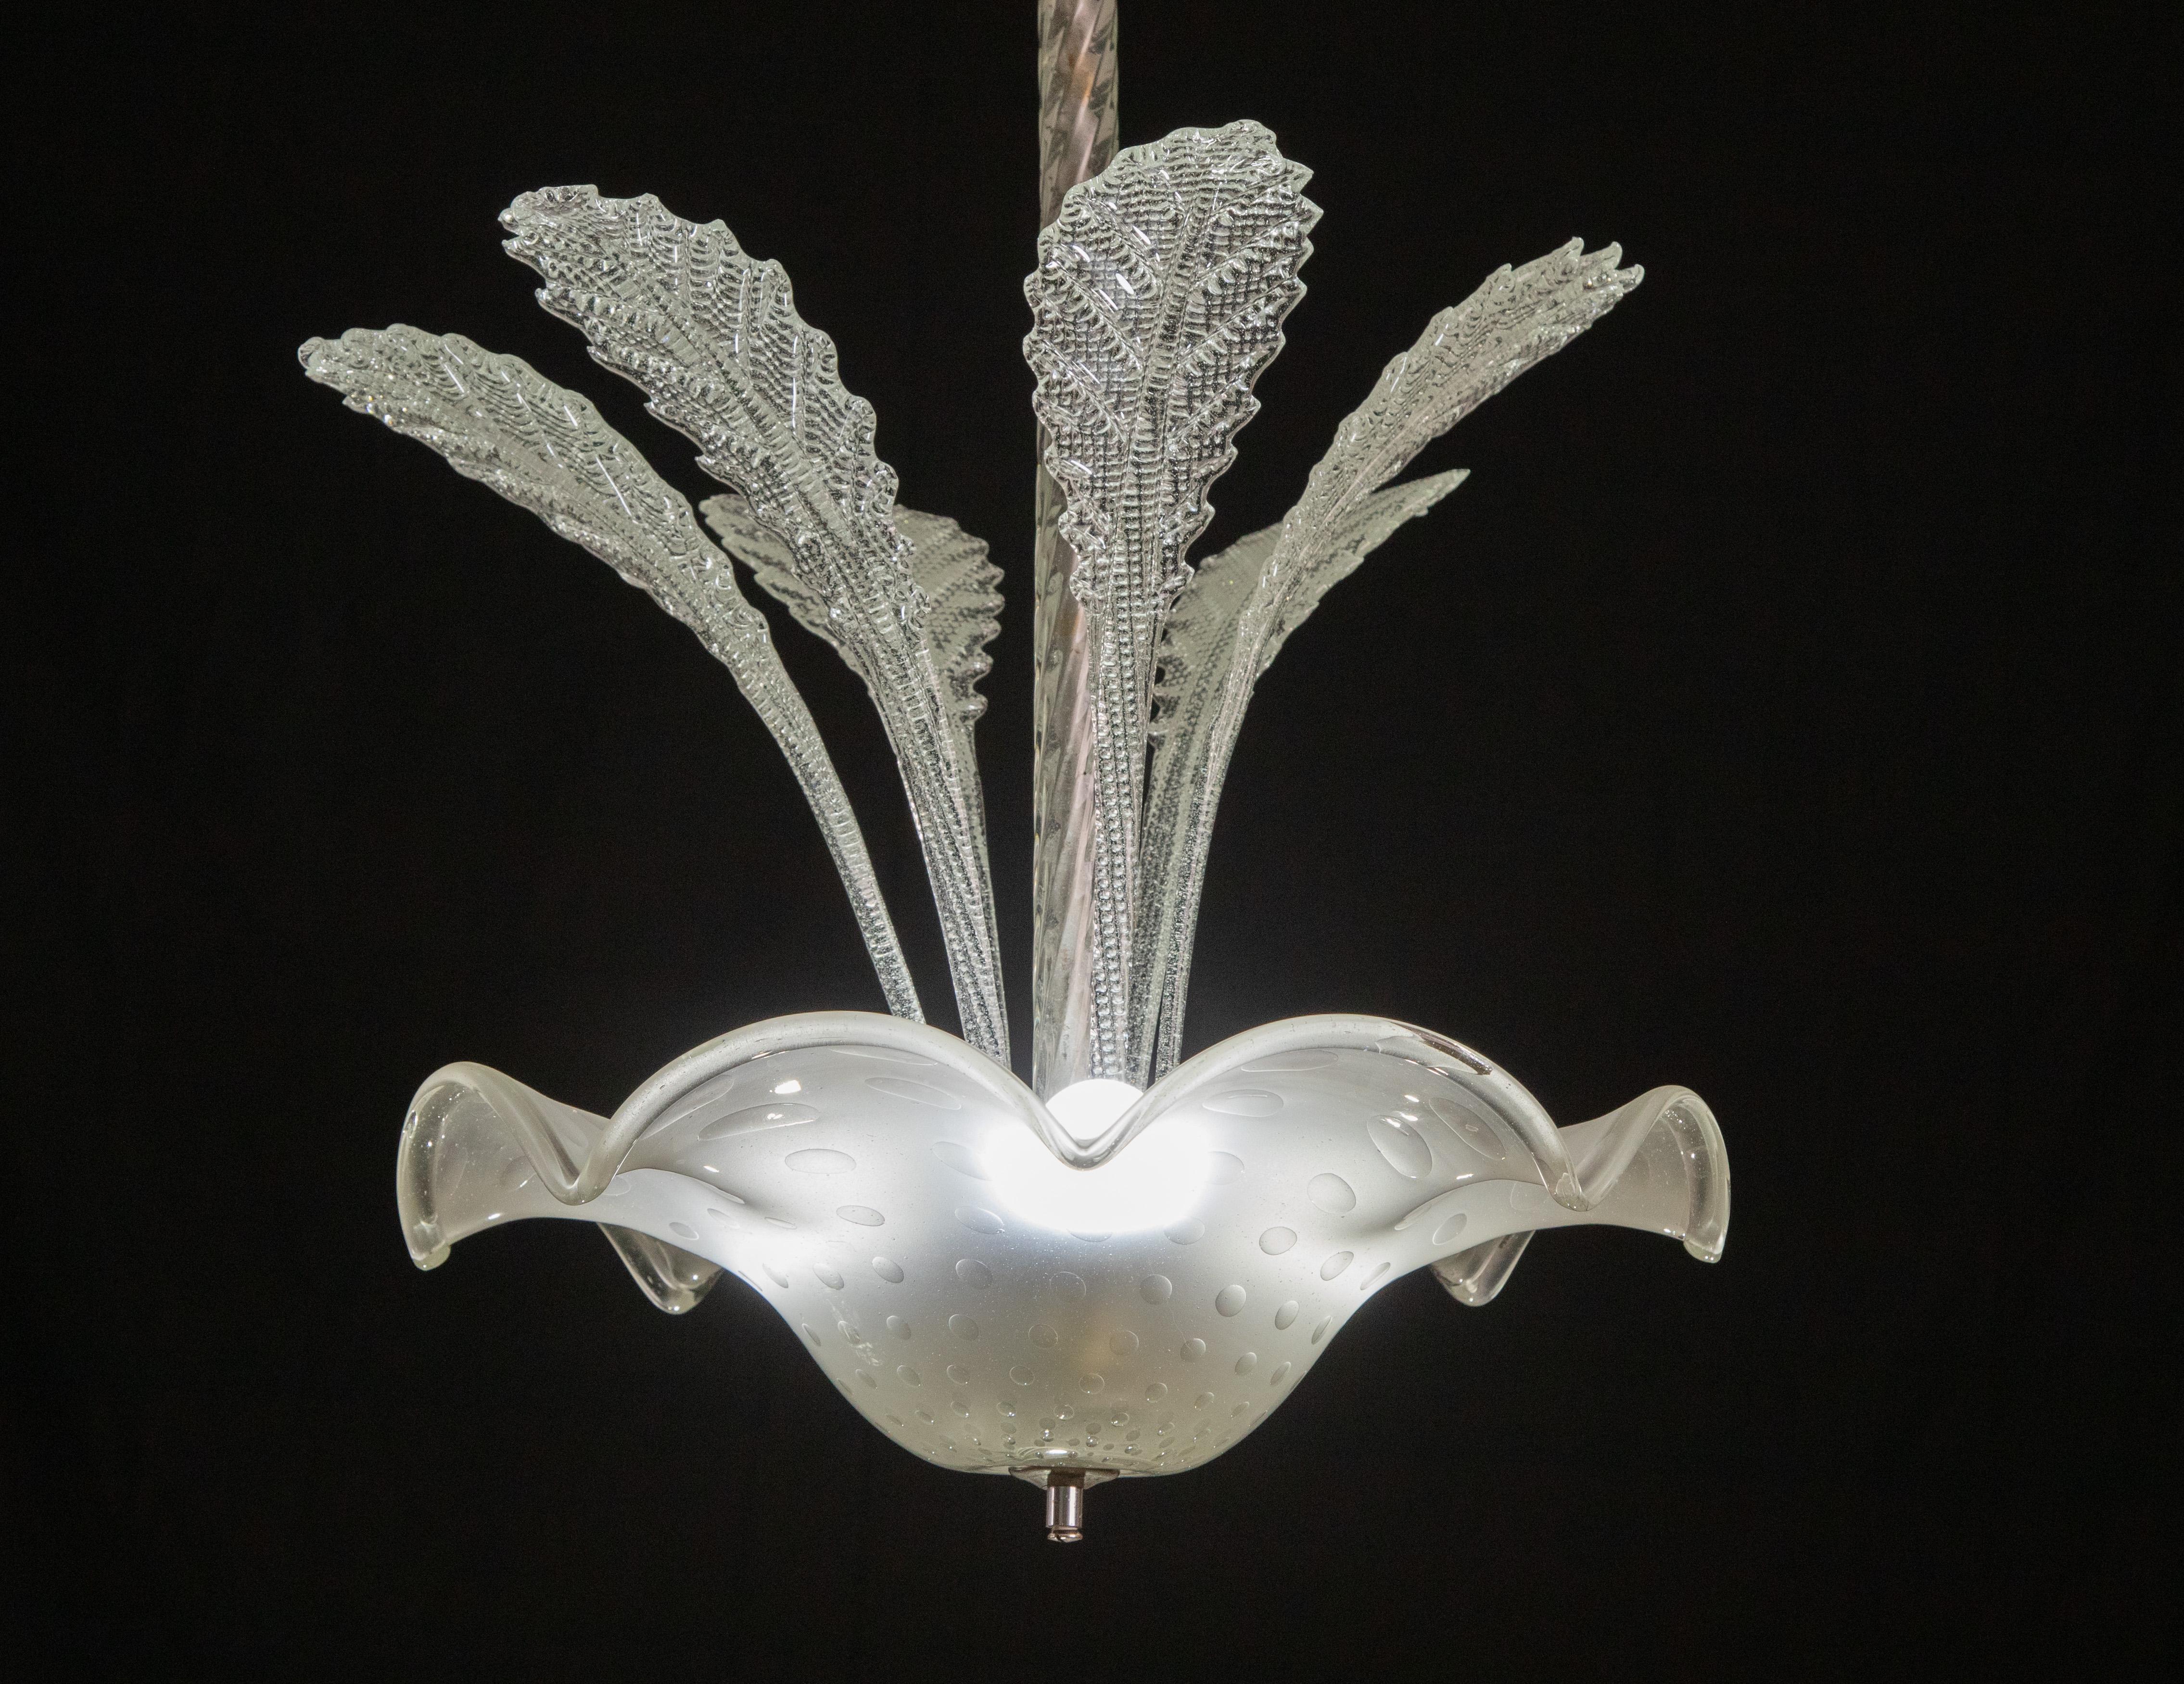 Echter Murano-Glas-Kronleuchter. Handgefertigt in Murano von Barovier e Toso.
Zeitraum: 1940s
Condit: perfekter Zustand und voll funktionsfähig. 
3 e14-Glühbirne.